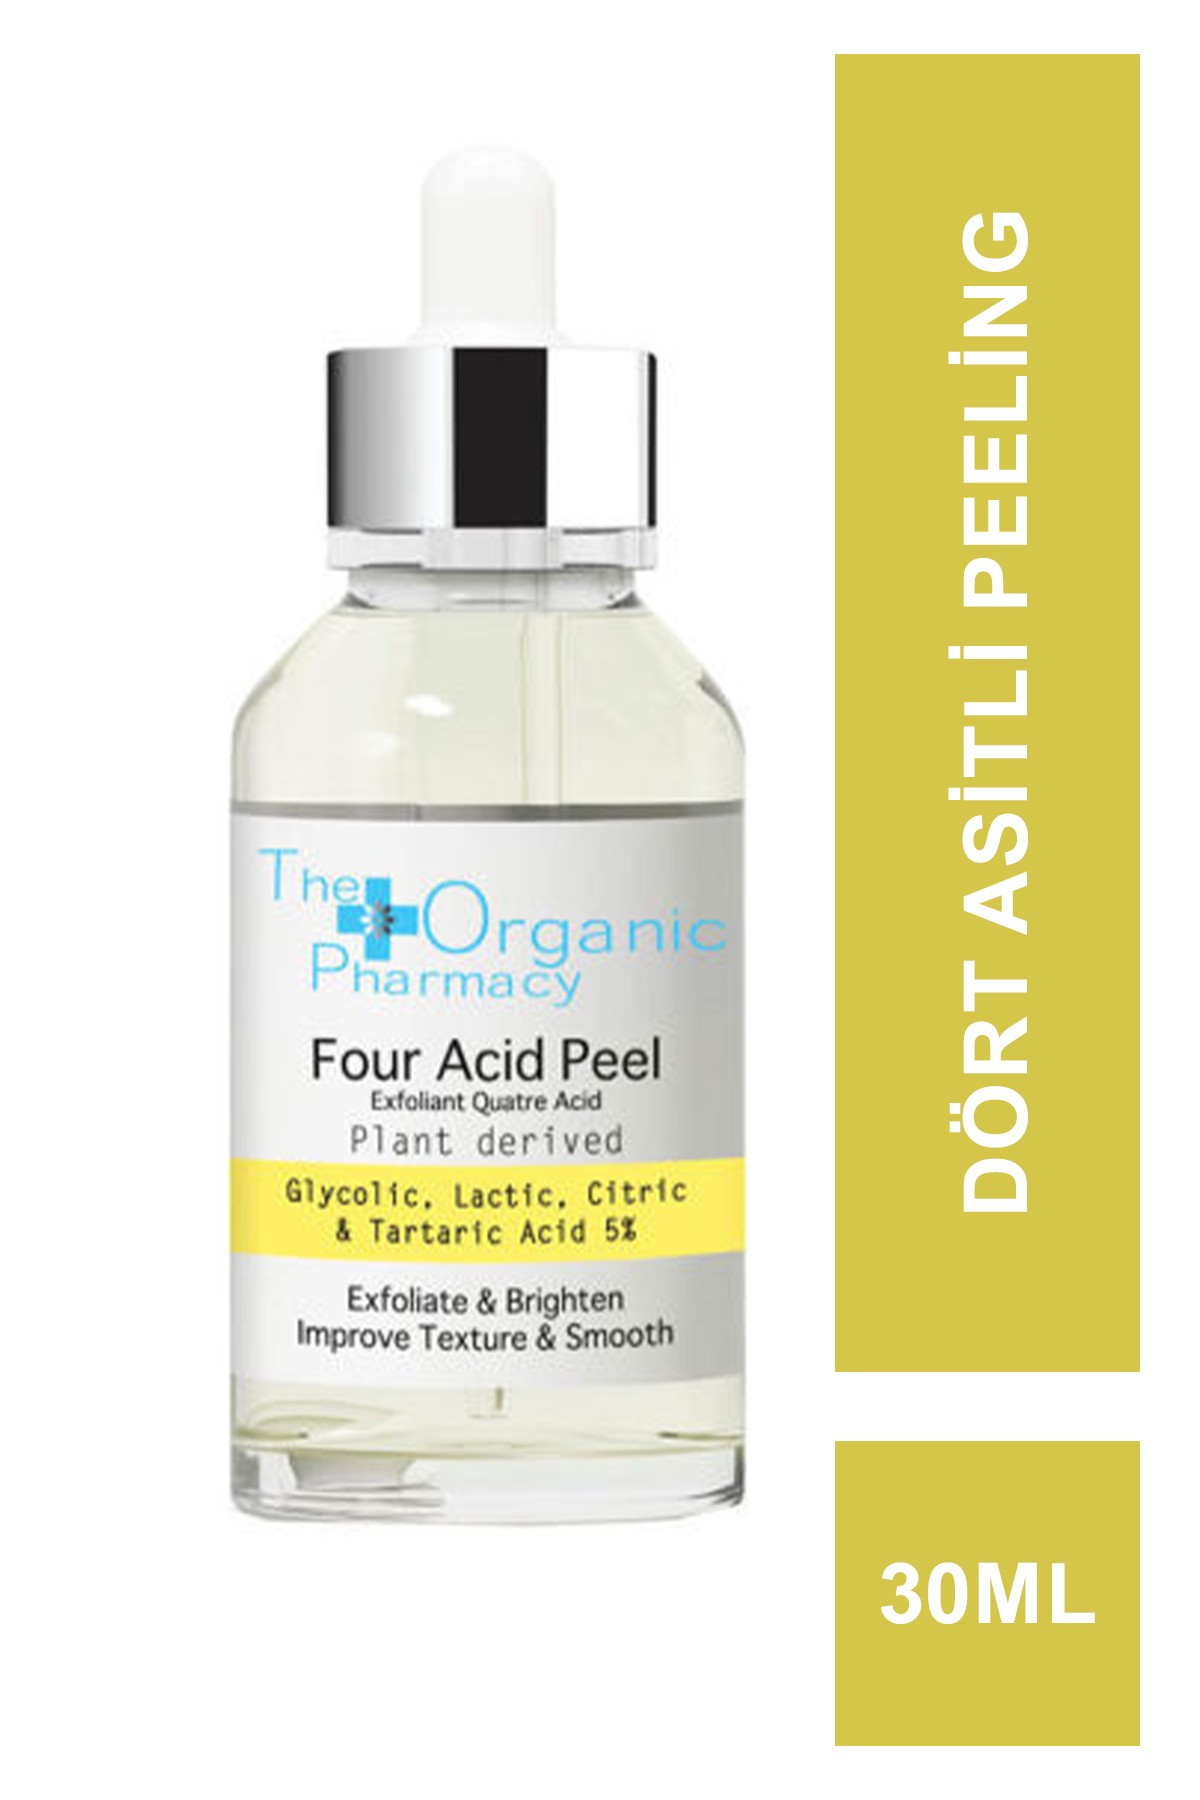 Outlet - The Organic Pharmacy Four Acid Peel %5 30 ml (S.K.T 08-2024)